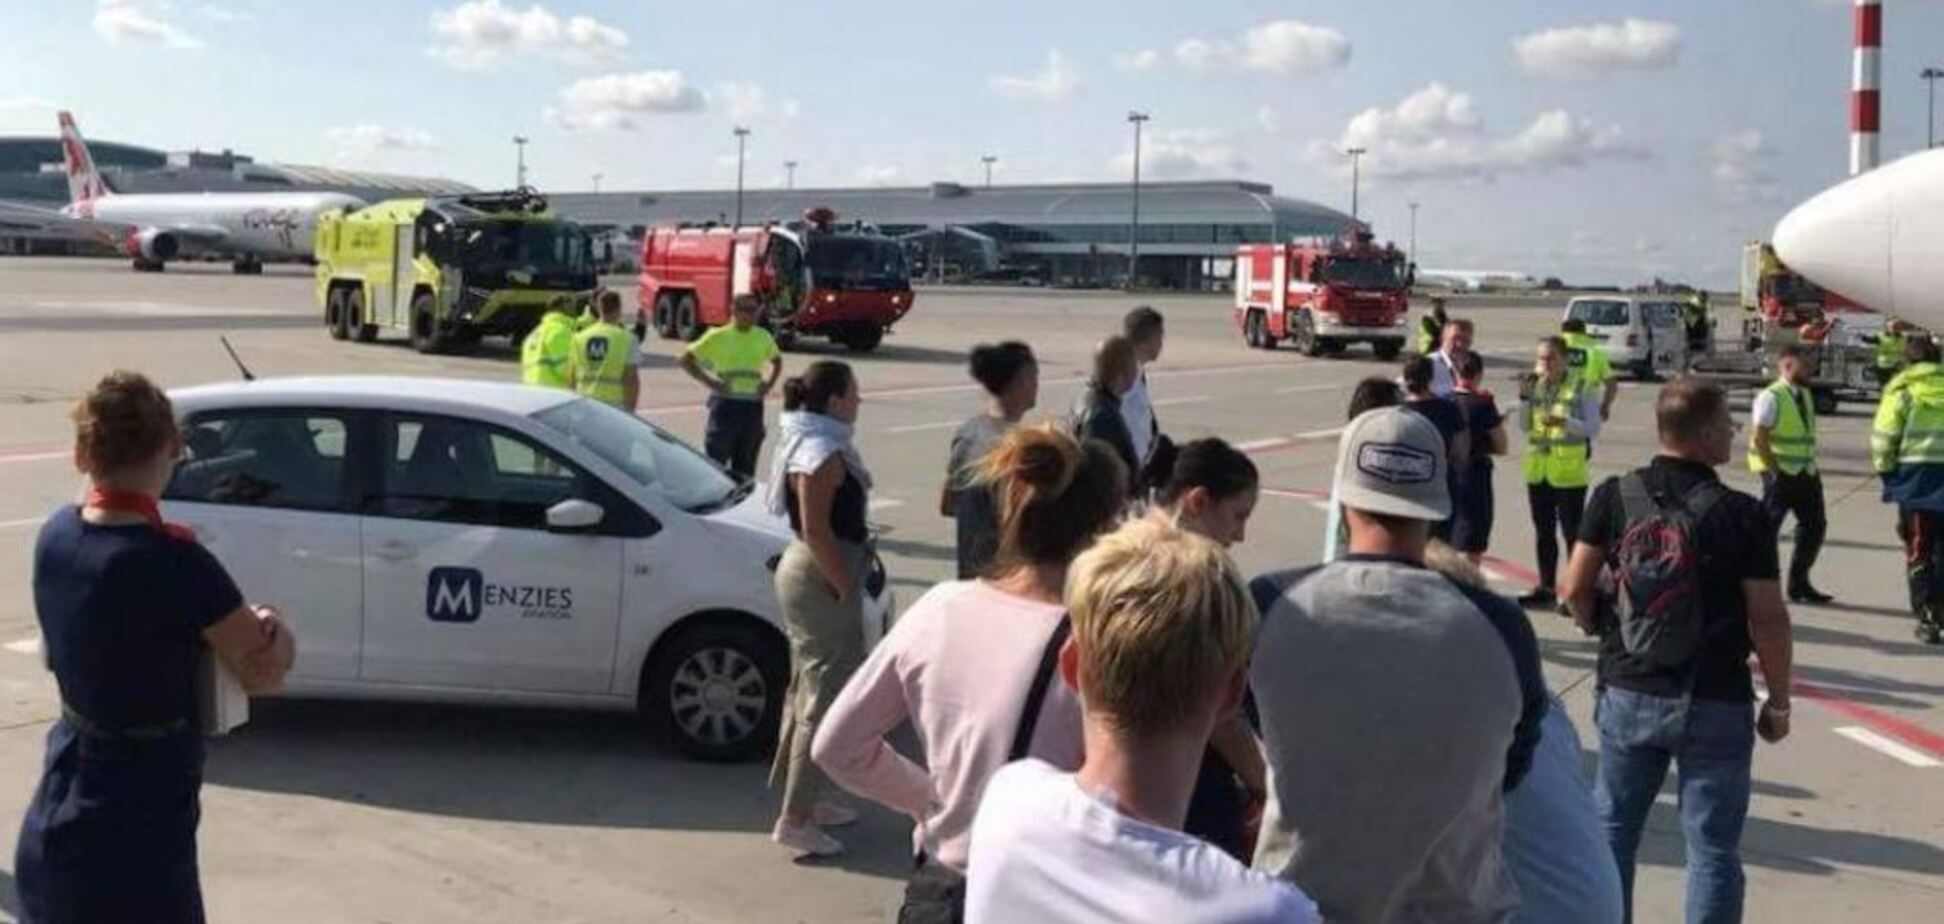 Внезапно задымился: в Чехии произошло ЧП с пассажирским самолетом